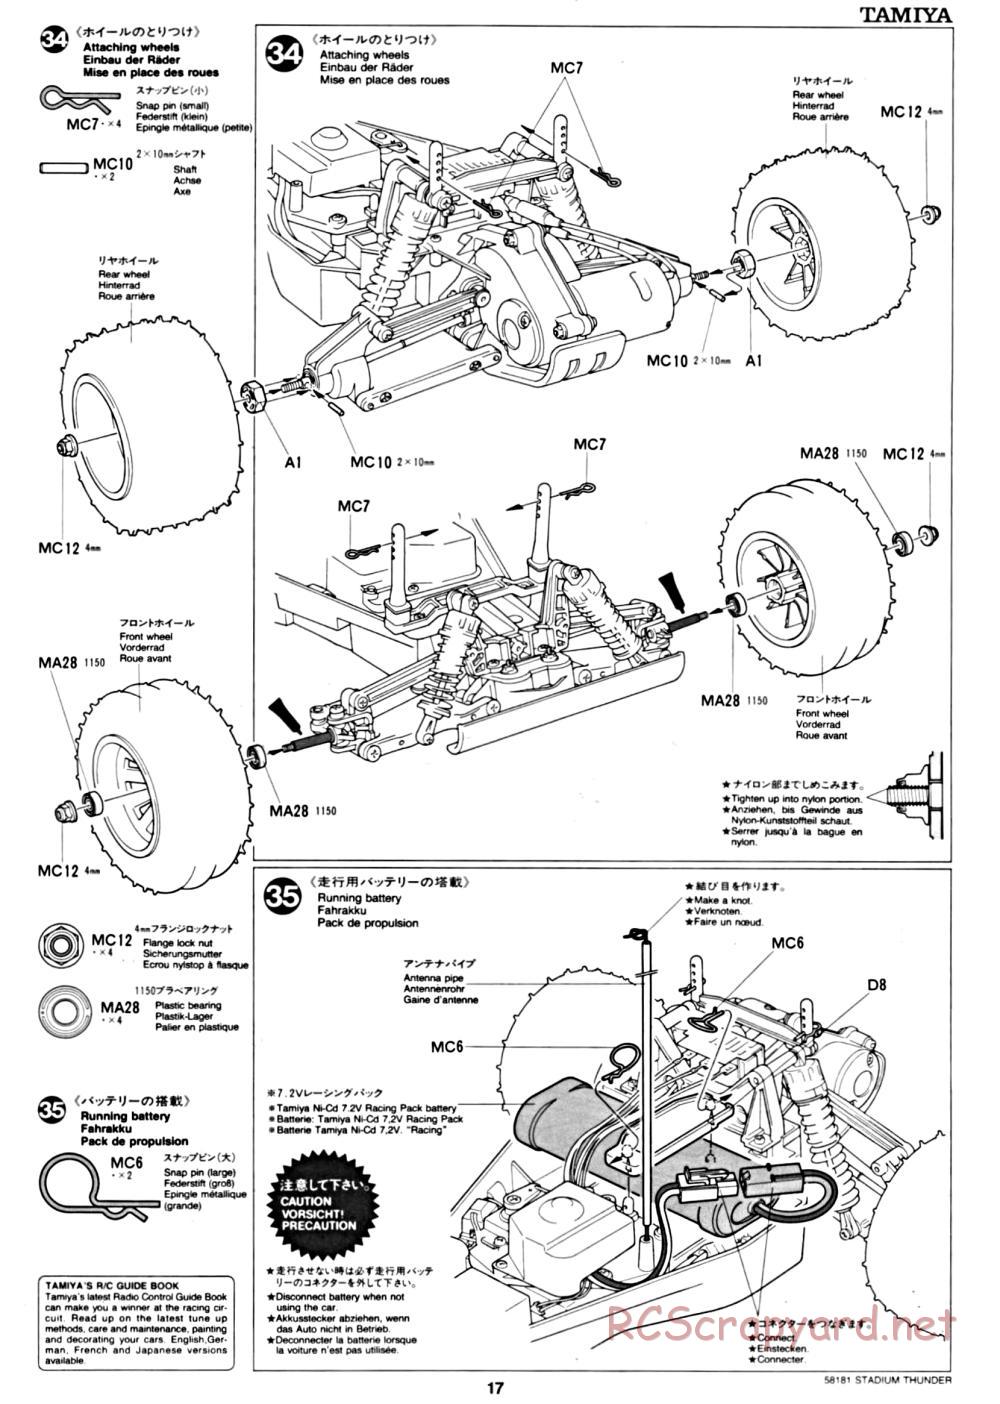 Tamiya - Stadium Thunder Chassis - Manual - Page 17